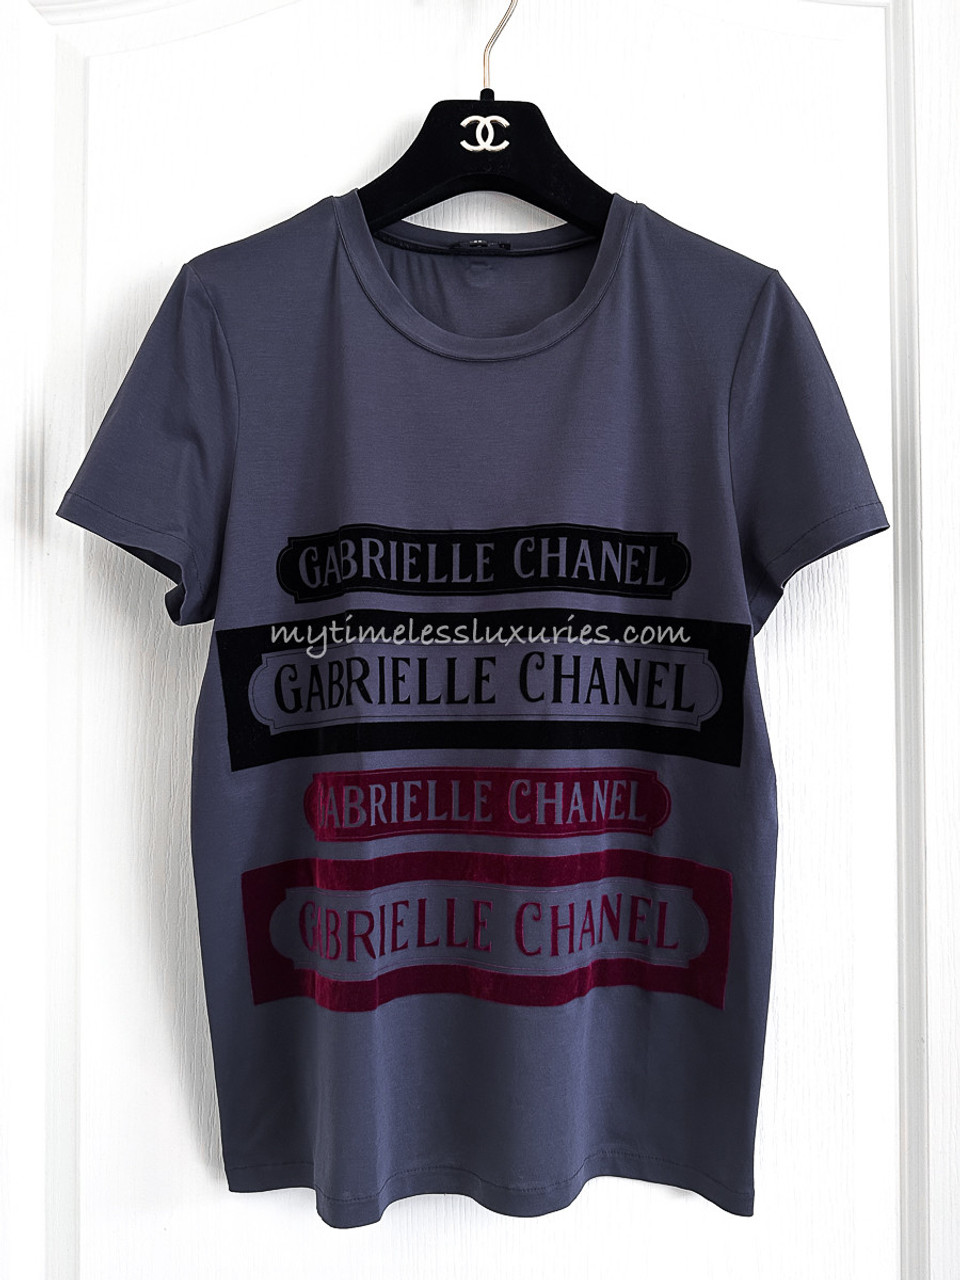 CHANEL GABRIELLE T-SHIRT – Bygone